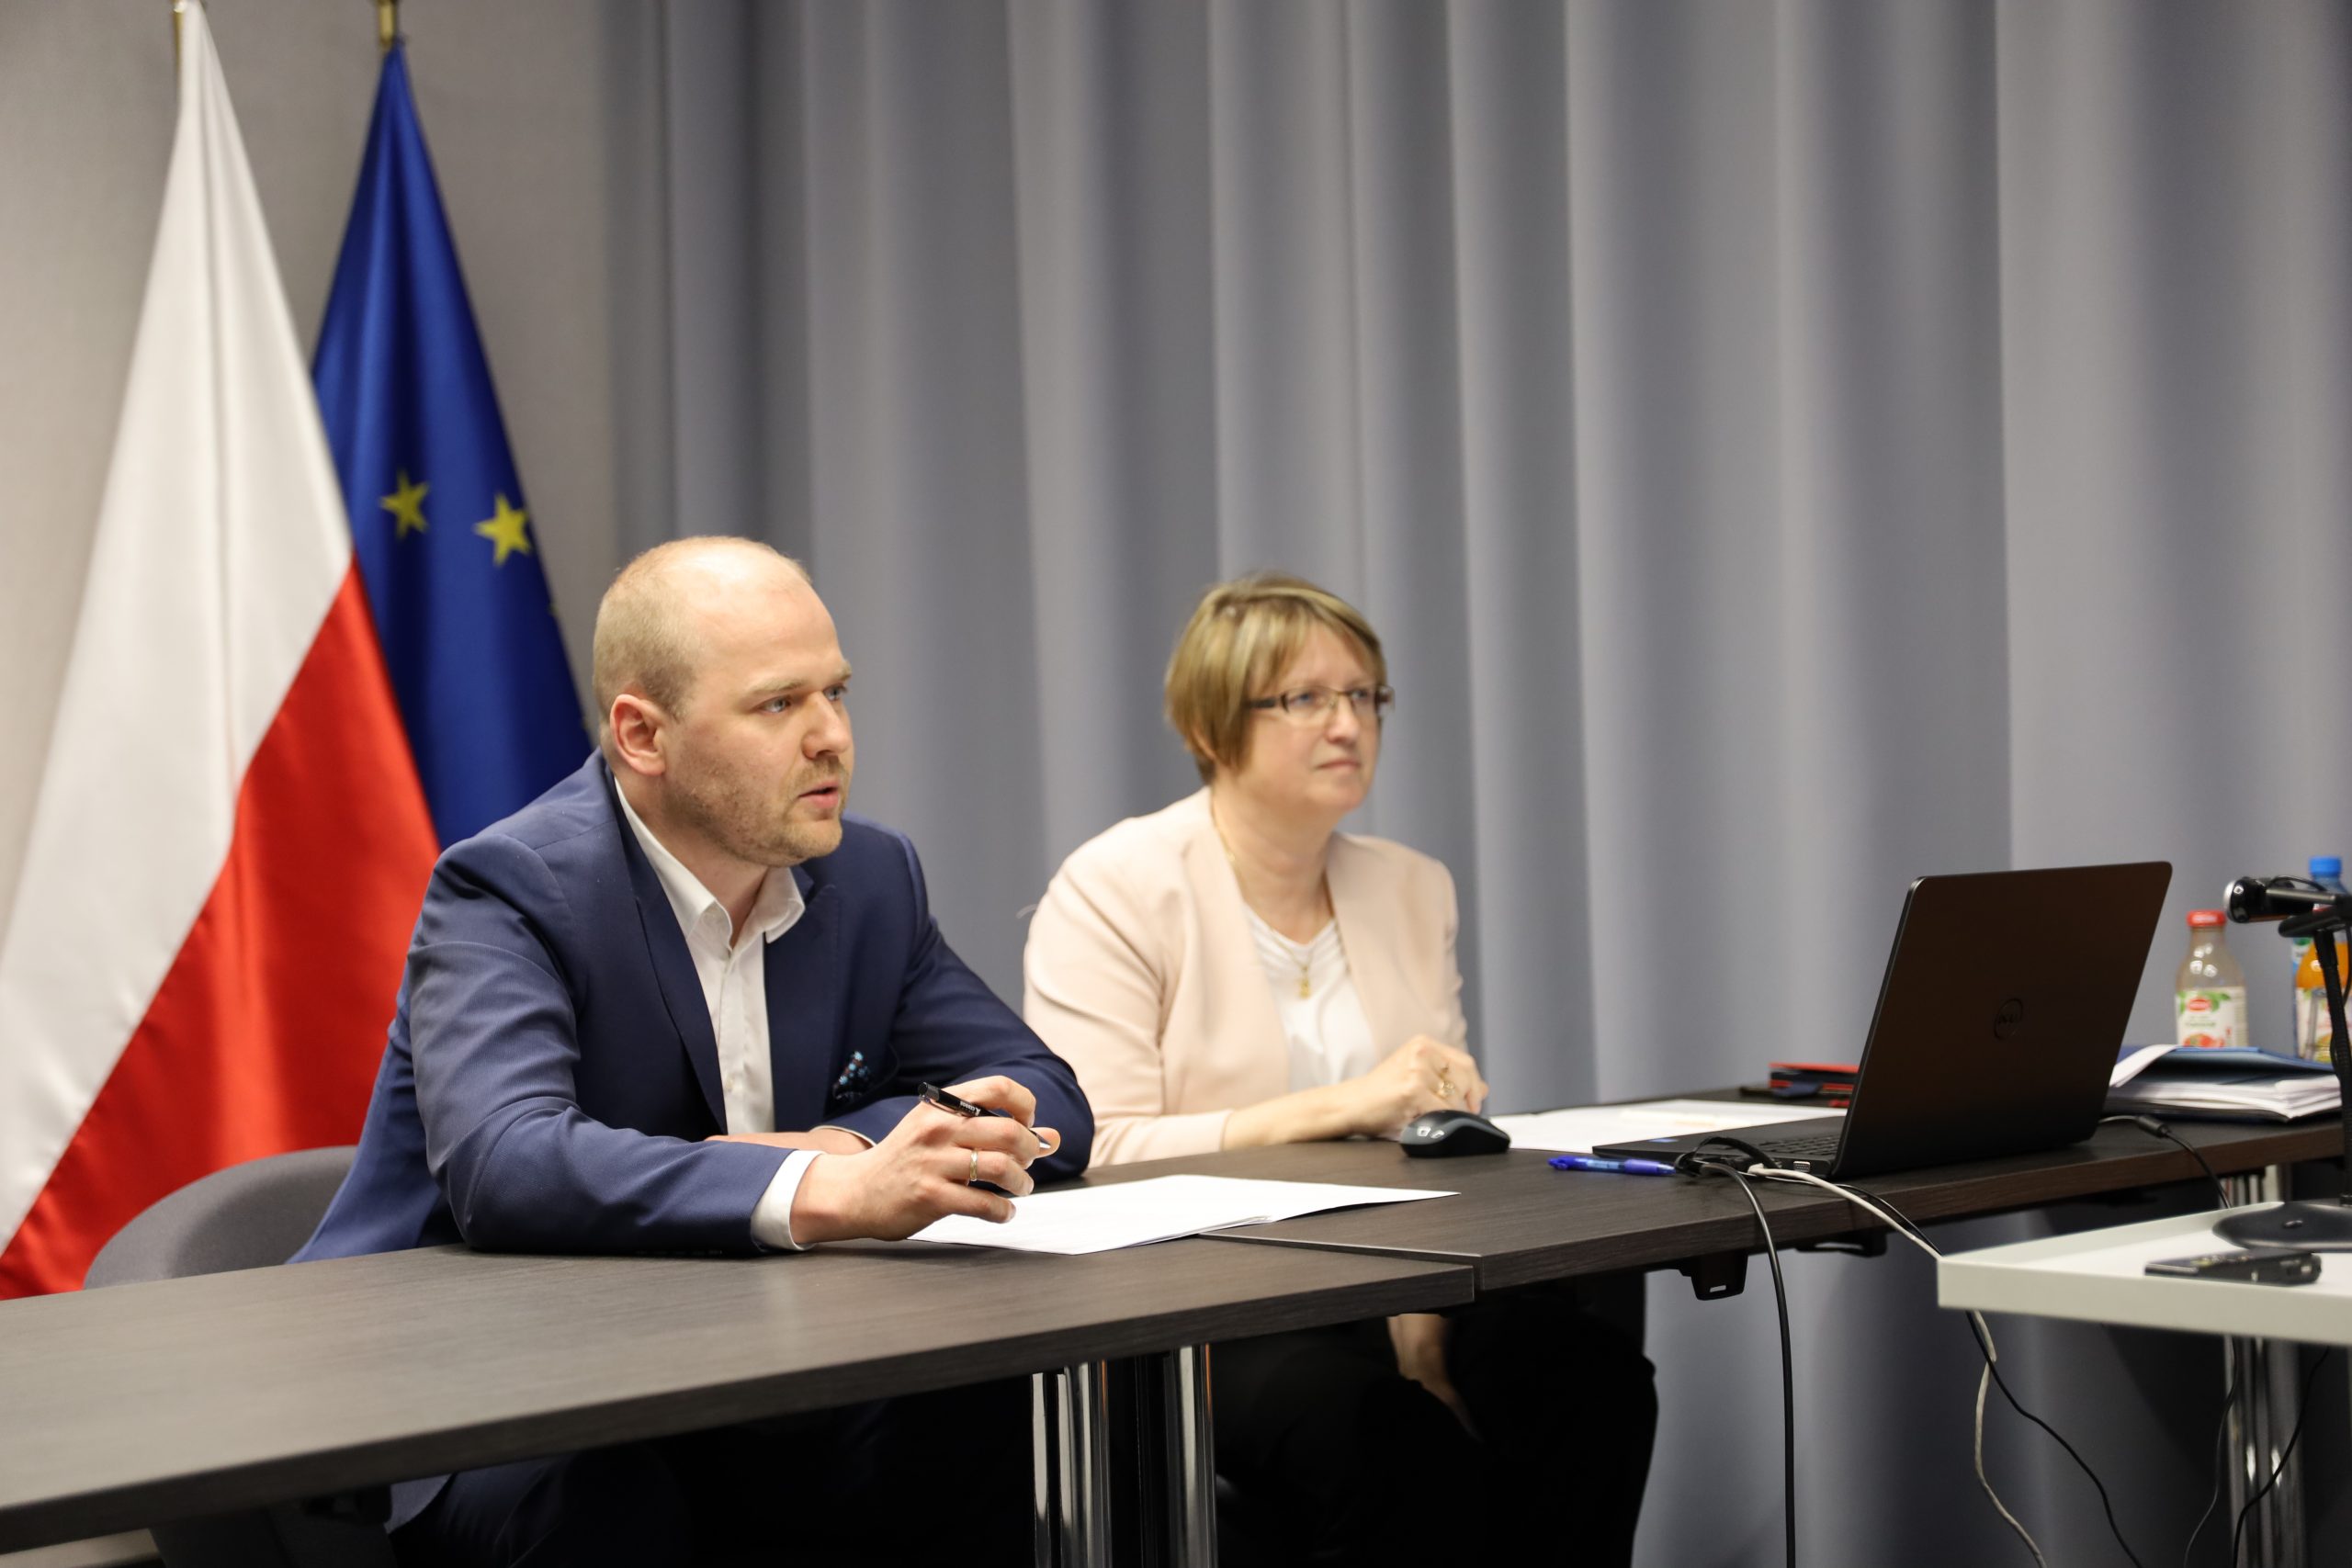 Zdjęcie przedstawia Ministra Krzysztofa Mazura oraz Panią Dyrektor Marię Szymańską. Oboje siedzą za stołem. W tyle widać flagi Polski oraz Unii Europejskiej.